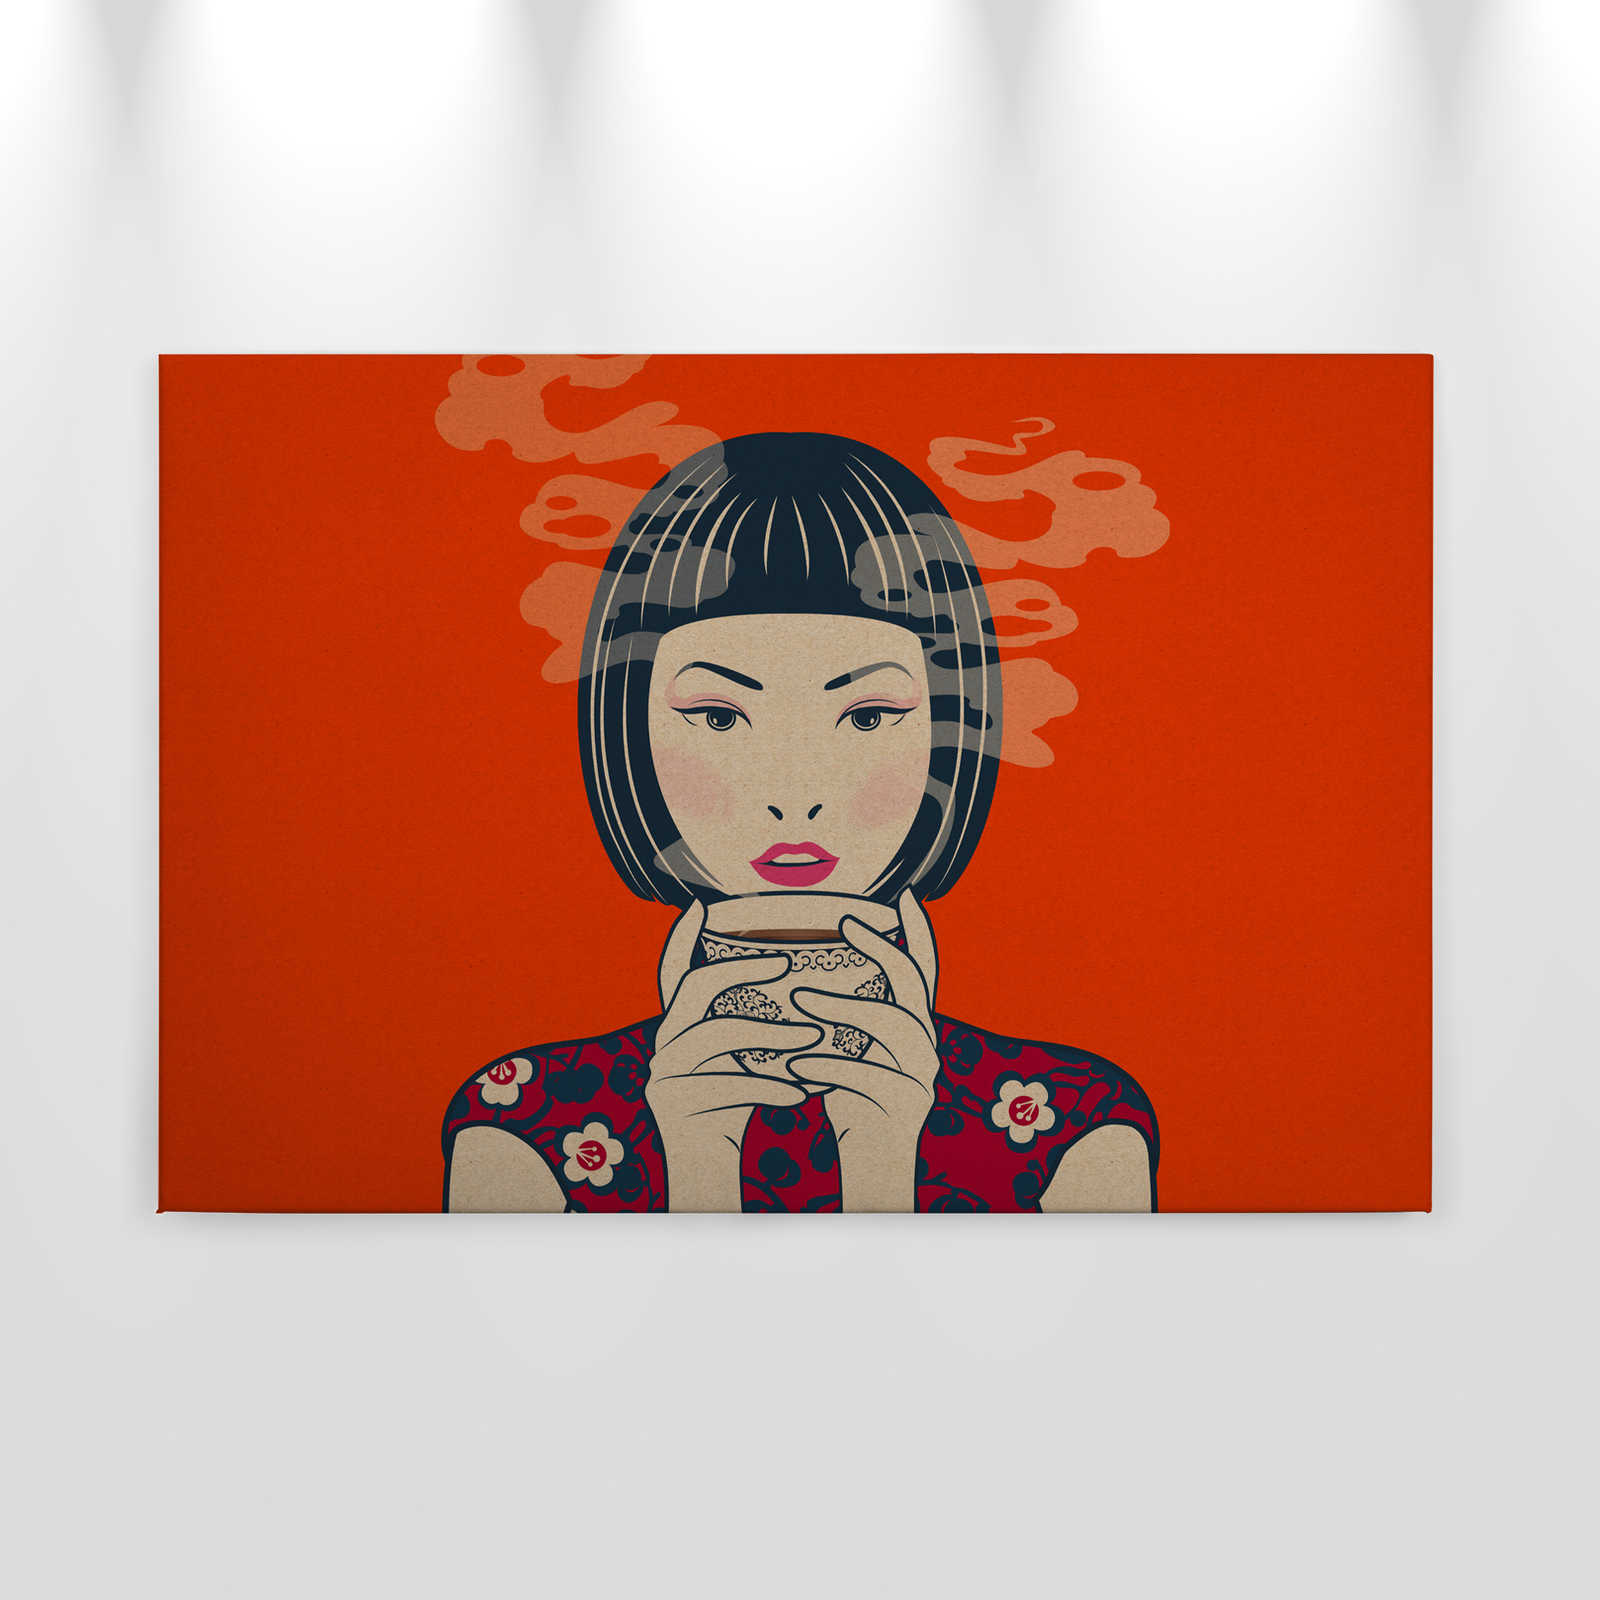             Akari 2 - Temps pour le thé, style manga en carton À structure sur toile - 0,90 m x 0,60 m
        